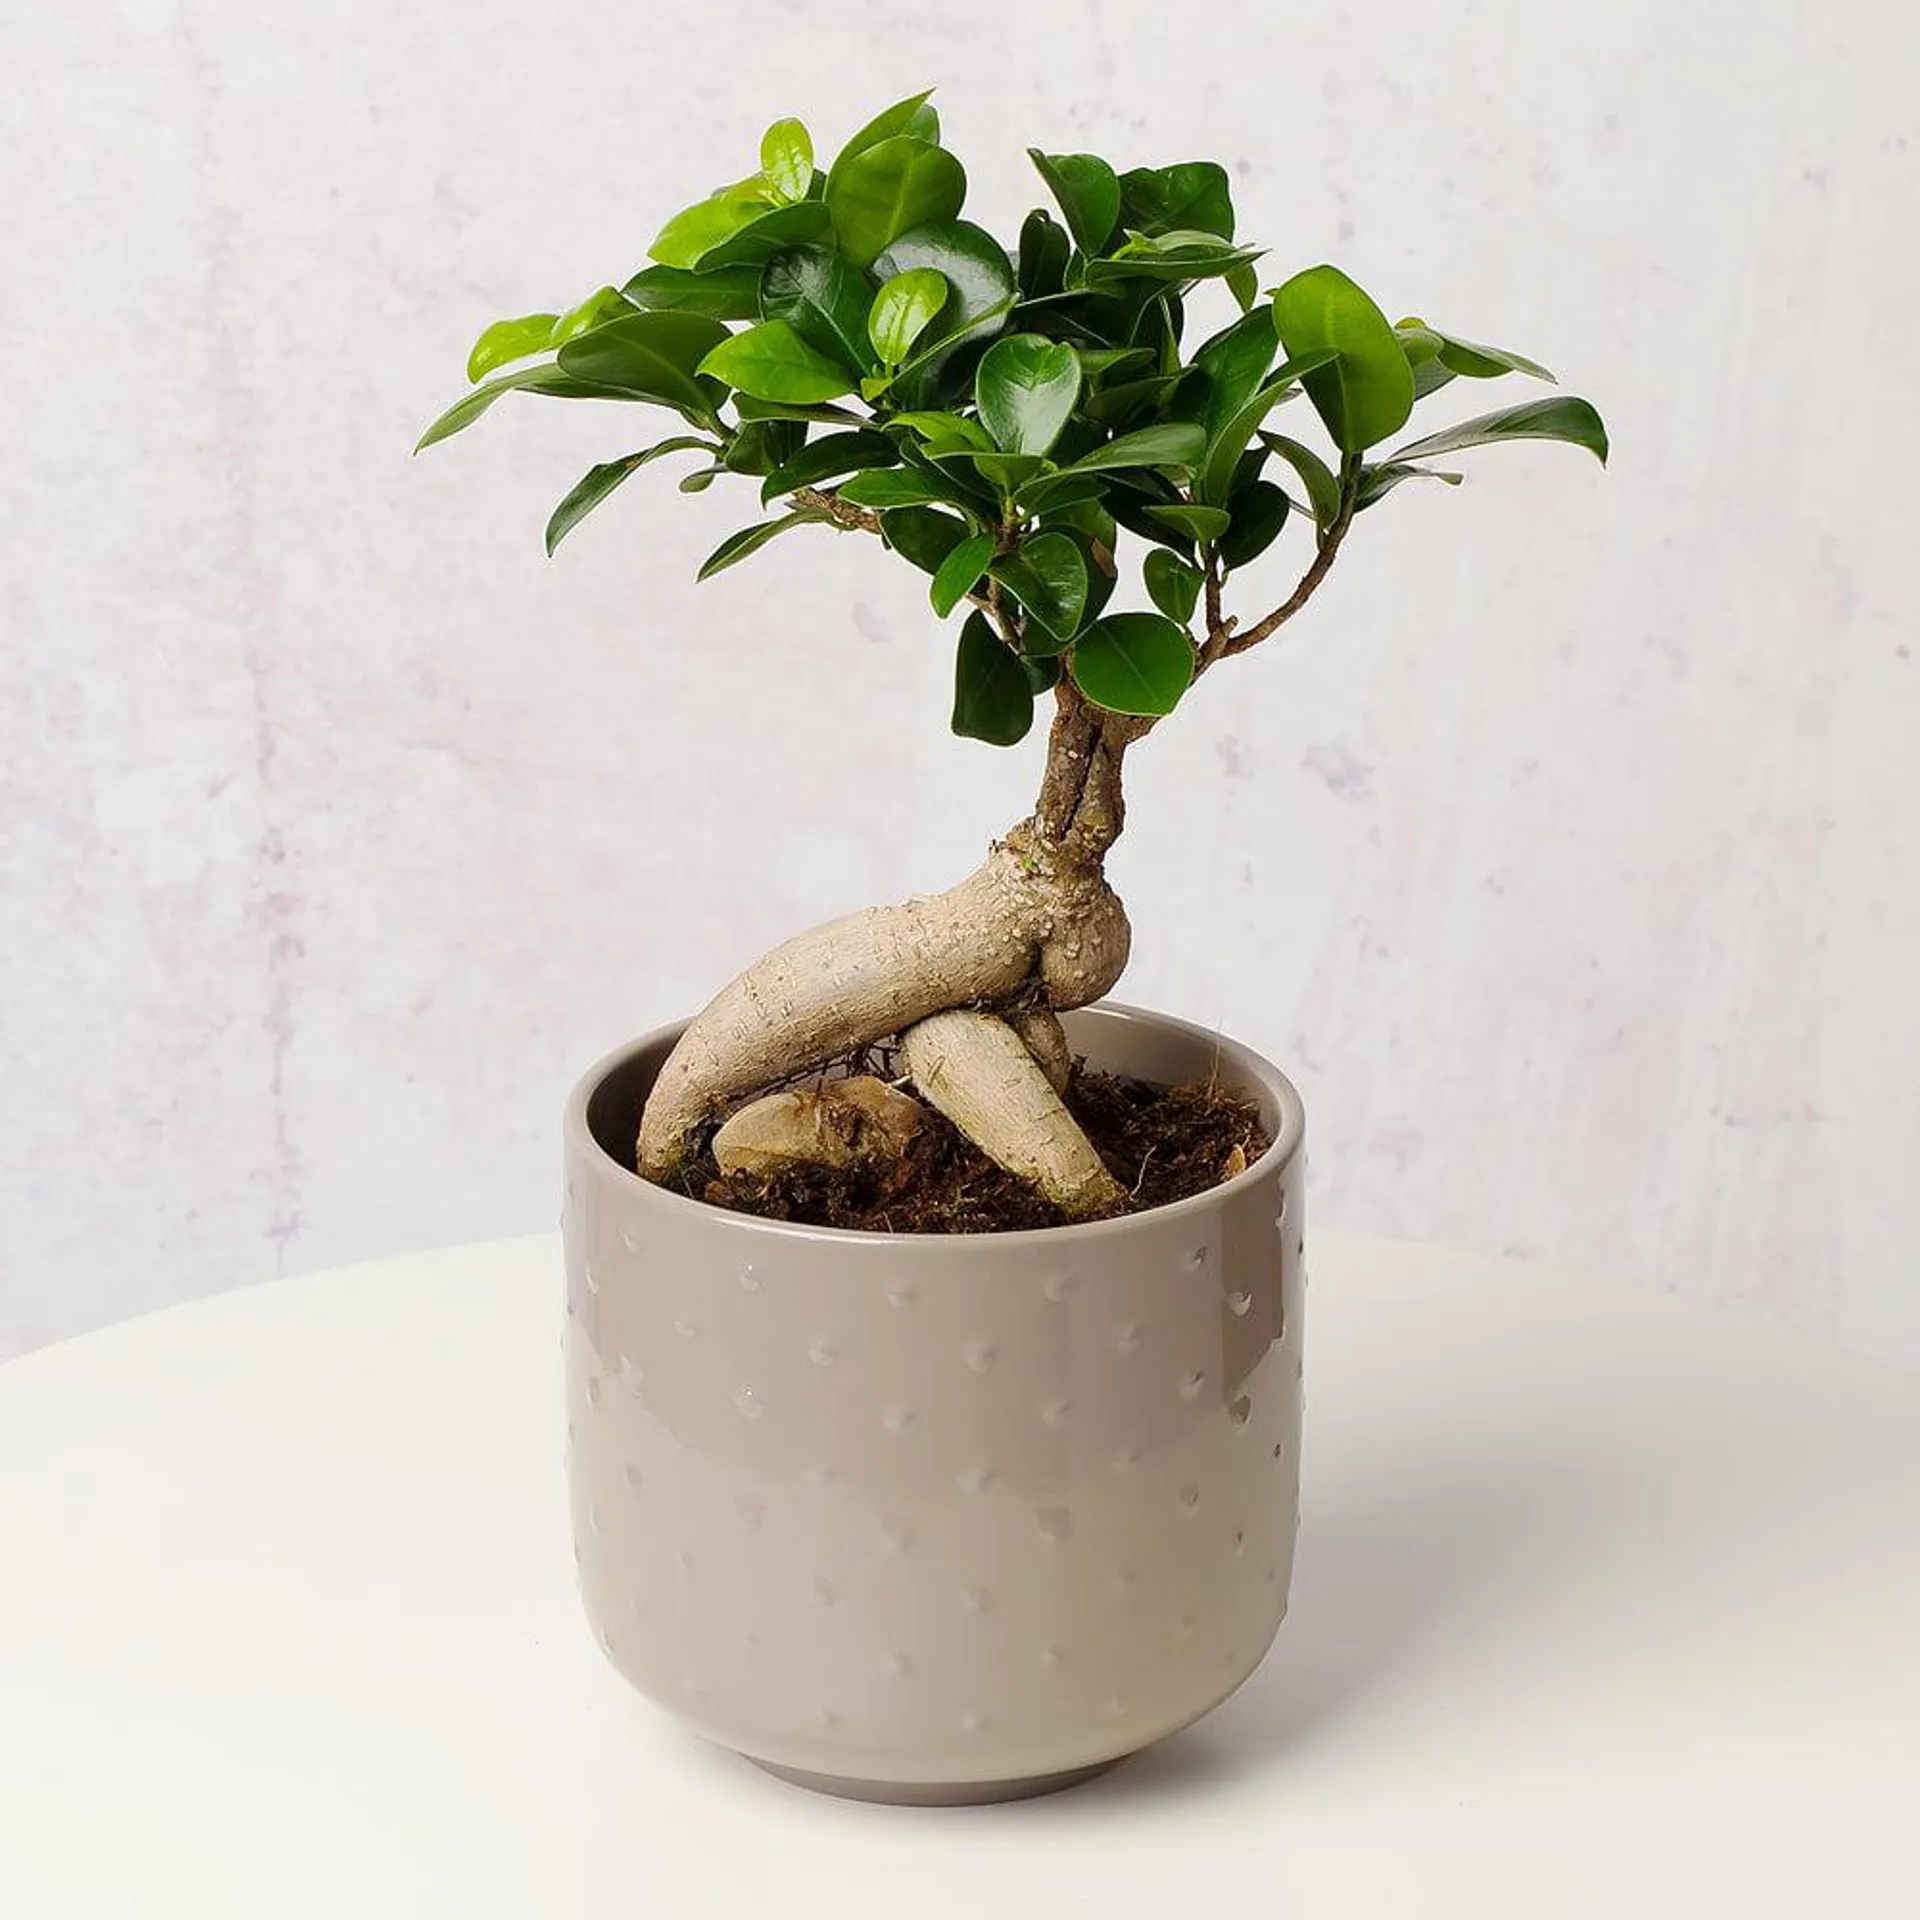 Bonsai Tree in Ceramic Pot